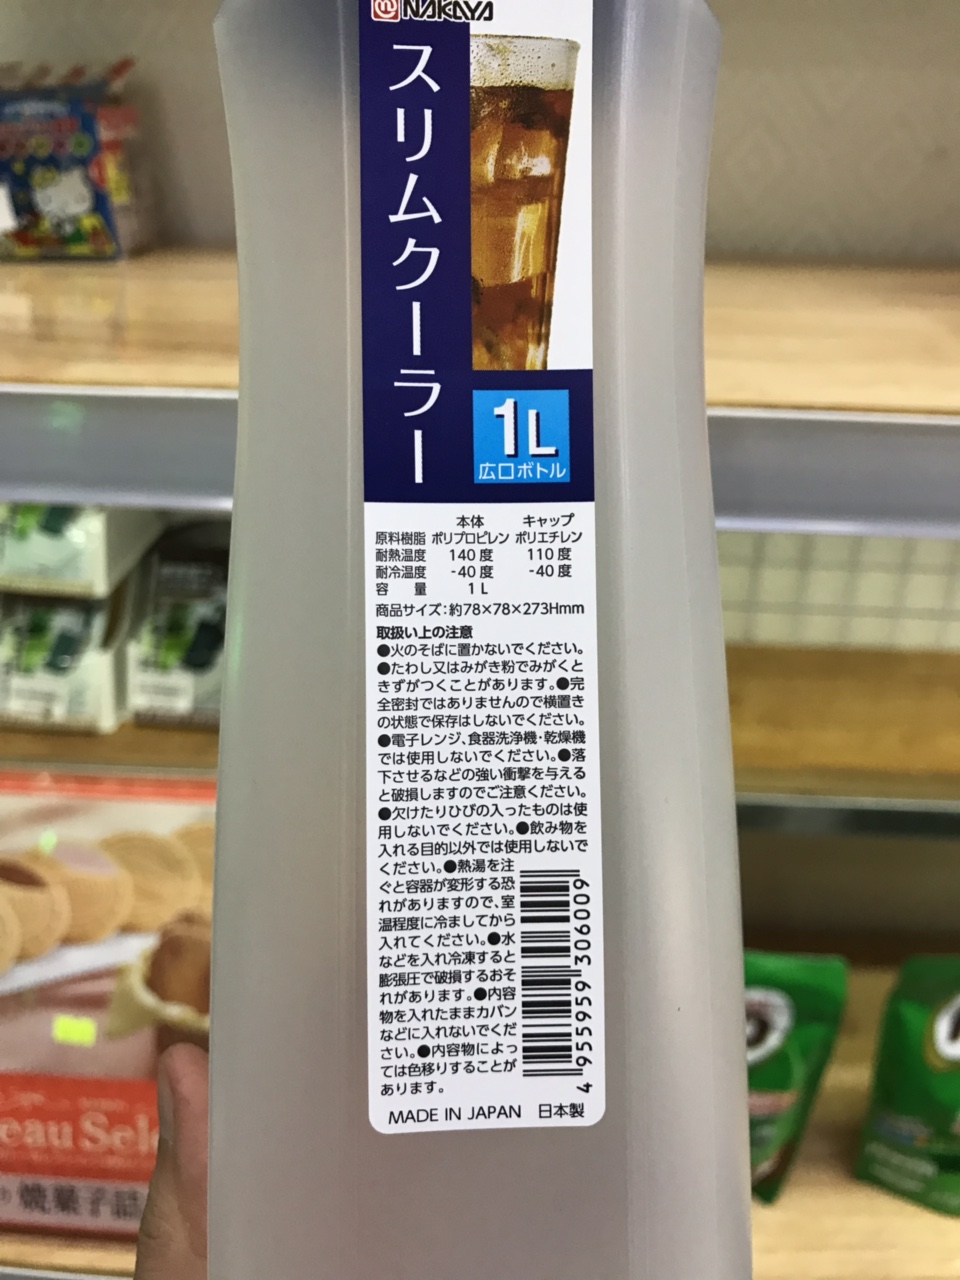 Bình nhựa đựng nước dung tích 1 lít Nakaya Nhật Bản N060